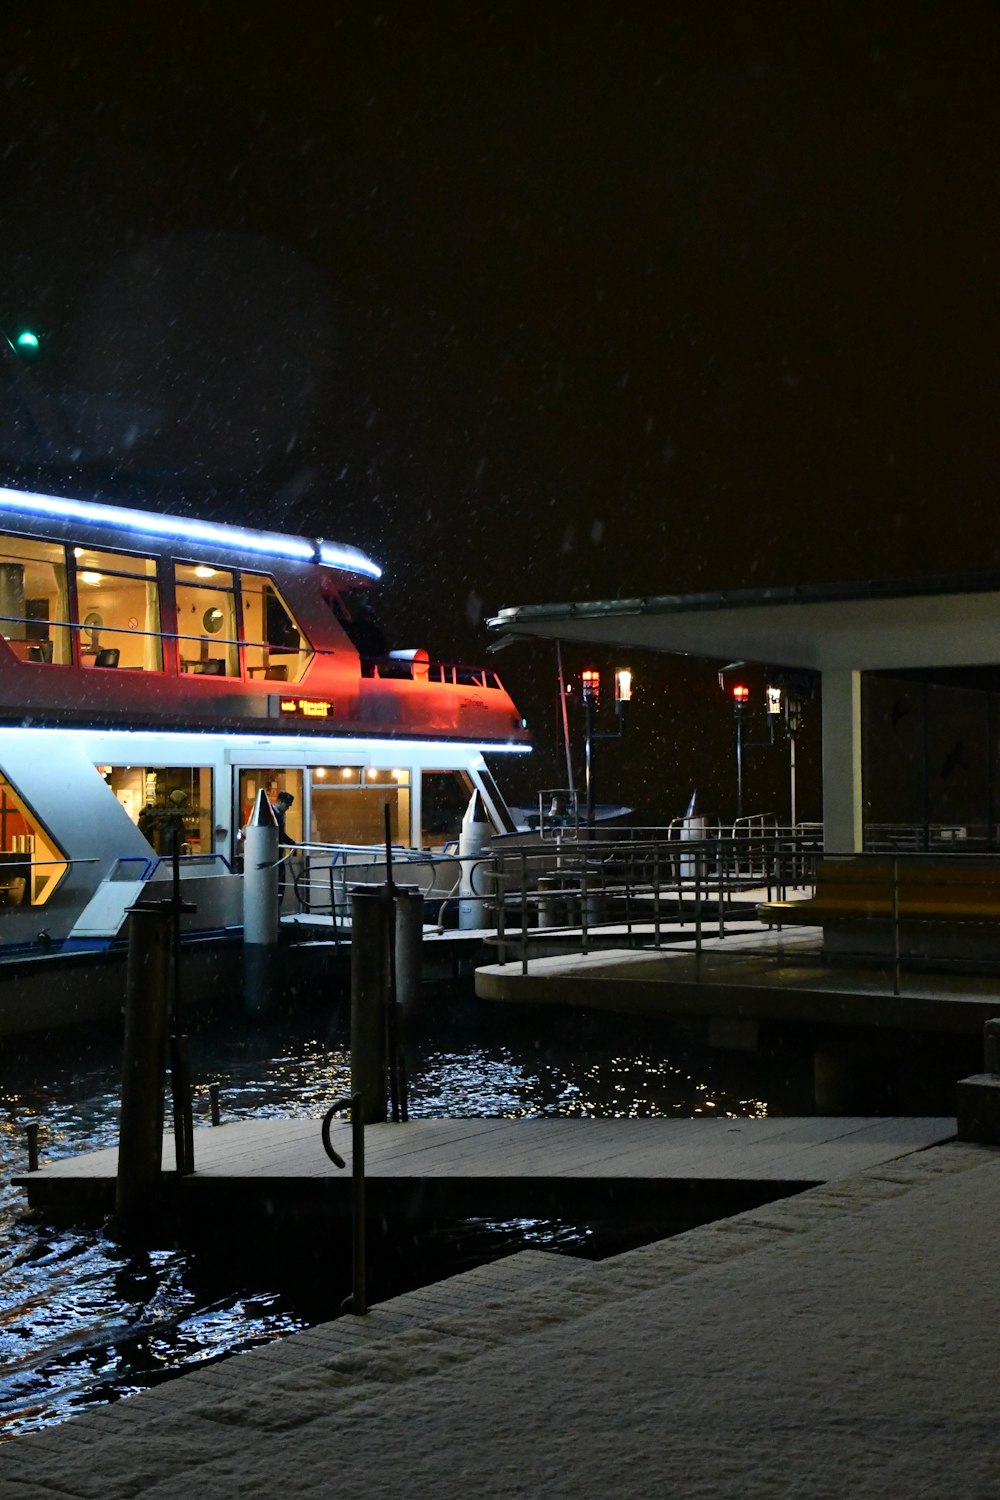 a boat docked at a pier at night